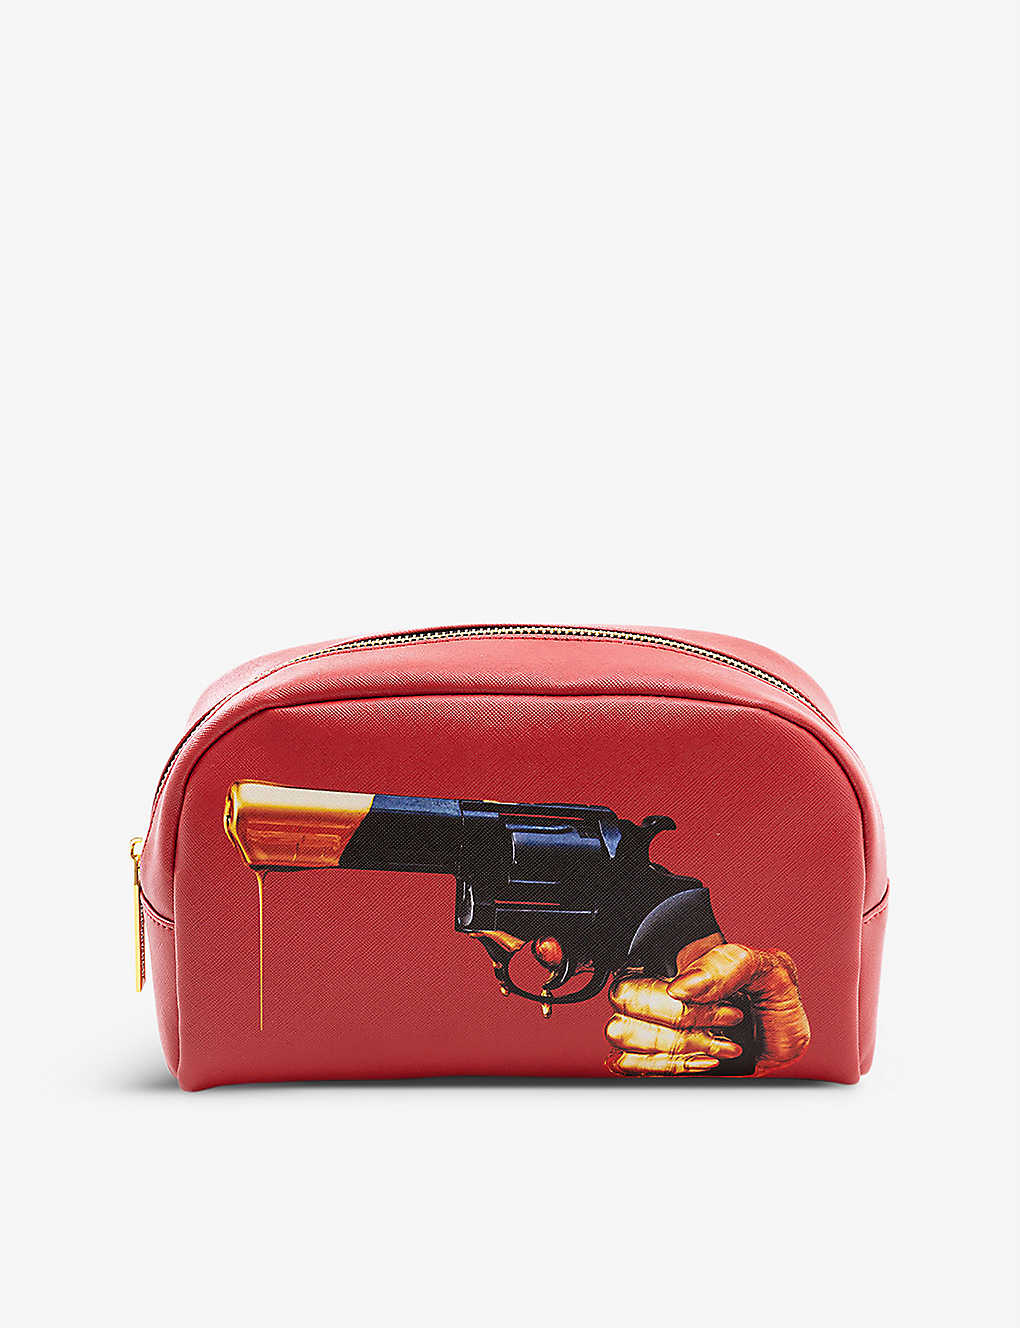 Seletti Wears Toilerpaper Revolver Faux-leather Cosmetics Bag 23cm X 13cm